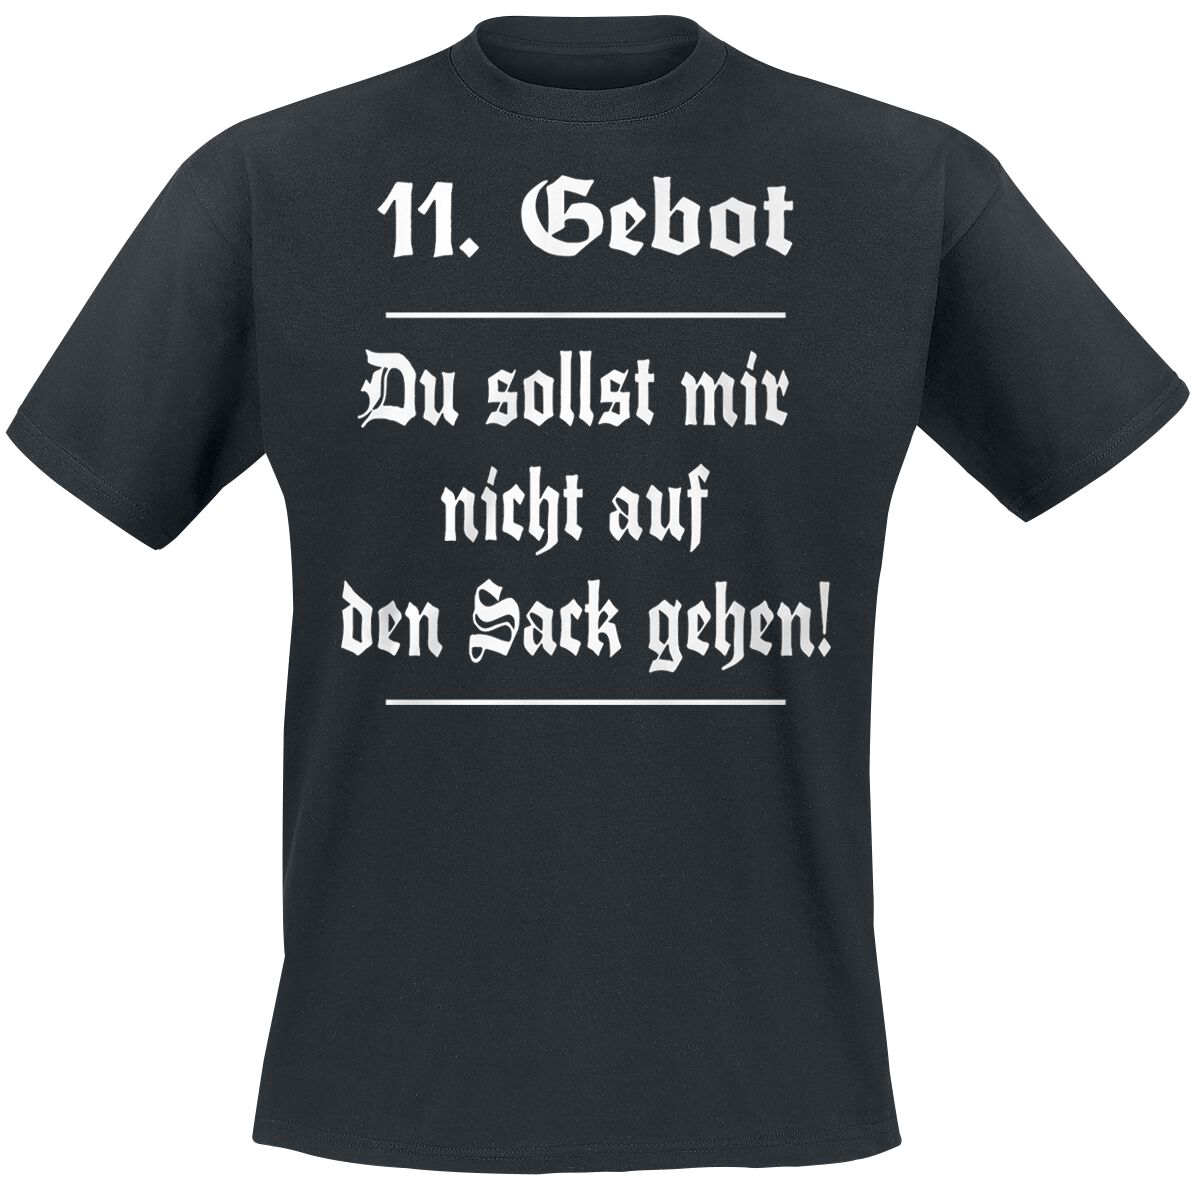 Sprüche T-Shirt - 11. Gebot - S bis 5XL - für Männer - Größe XL - schwarz